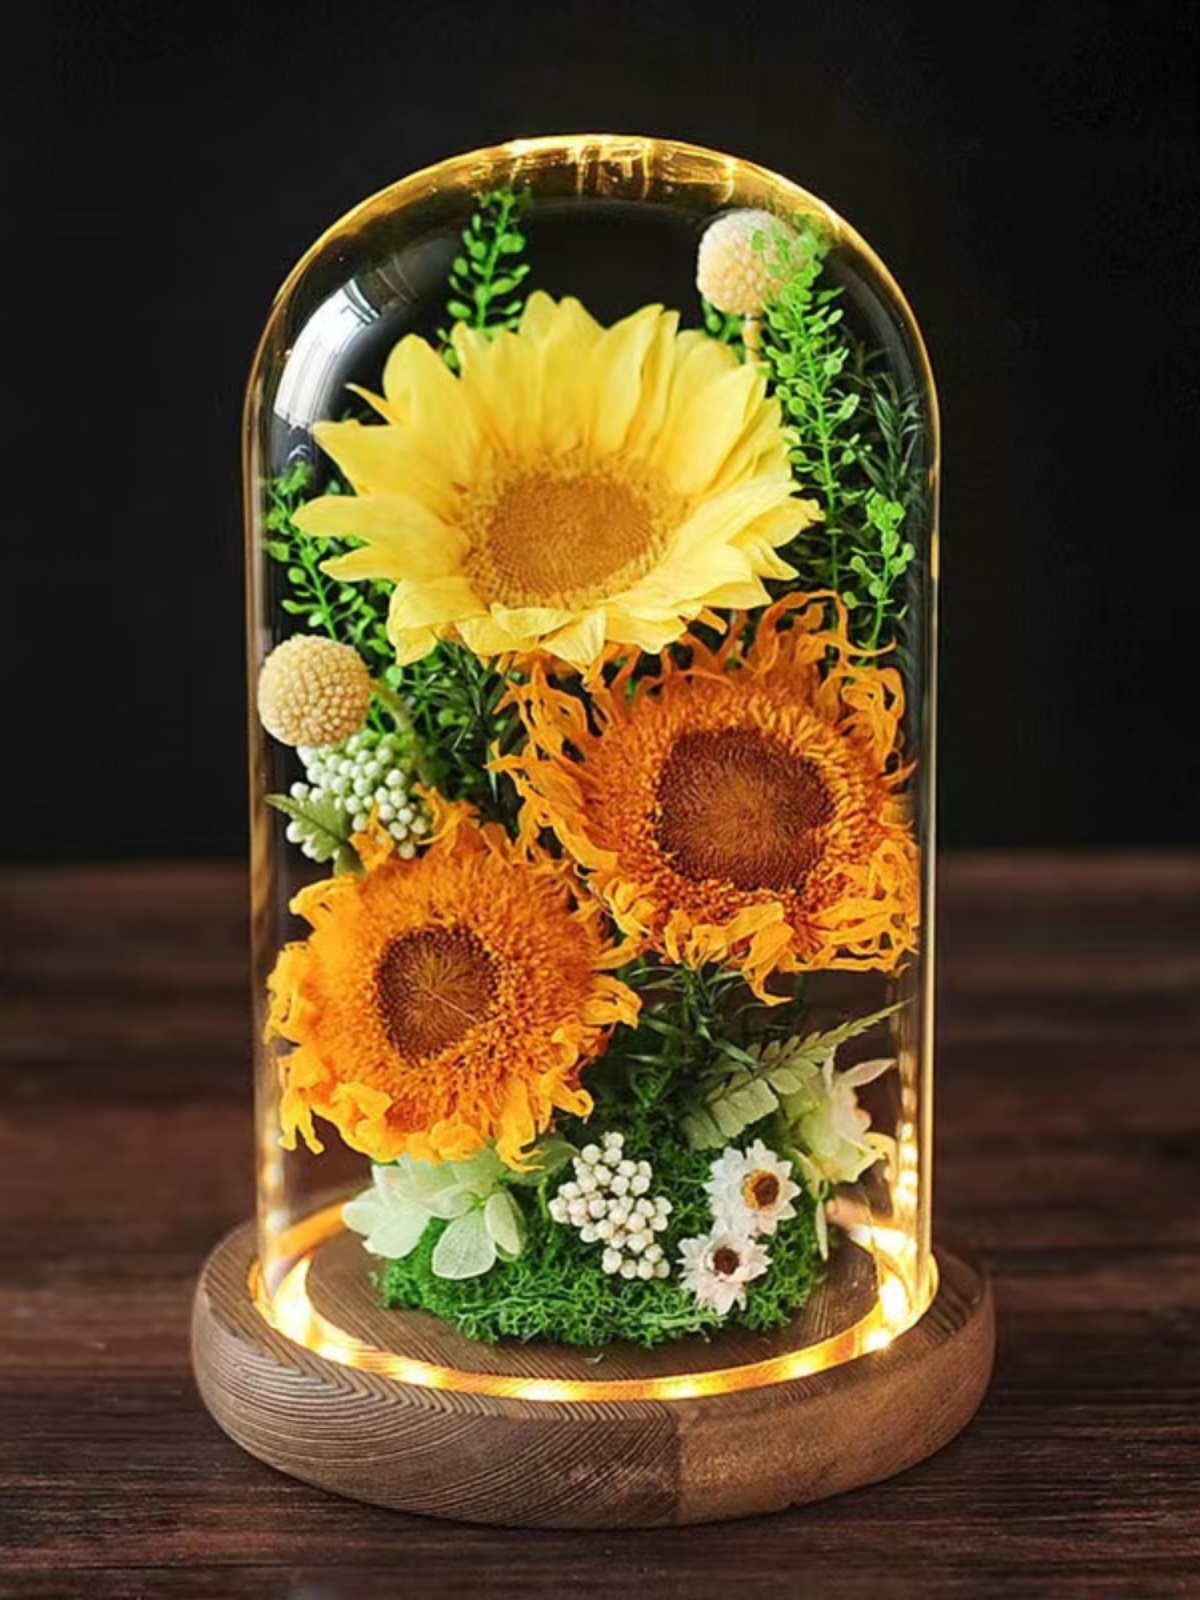 創意玻璃罩永生真花向日葵擺件送禮佳品點綴家居生活